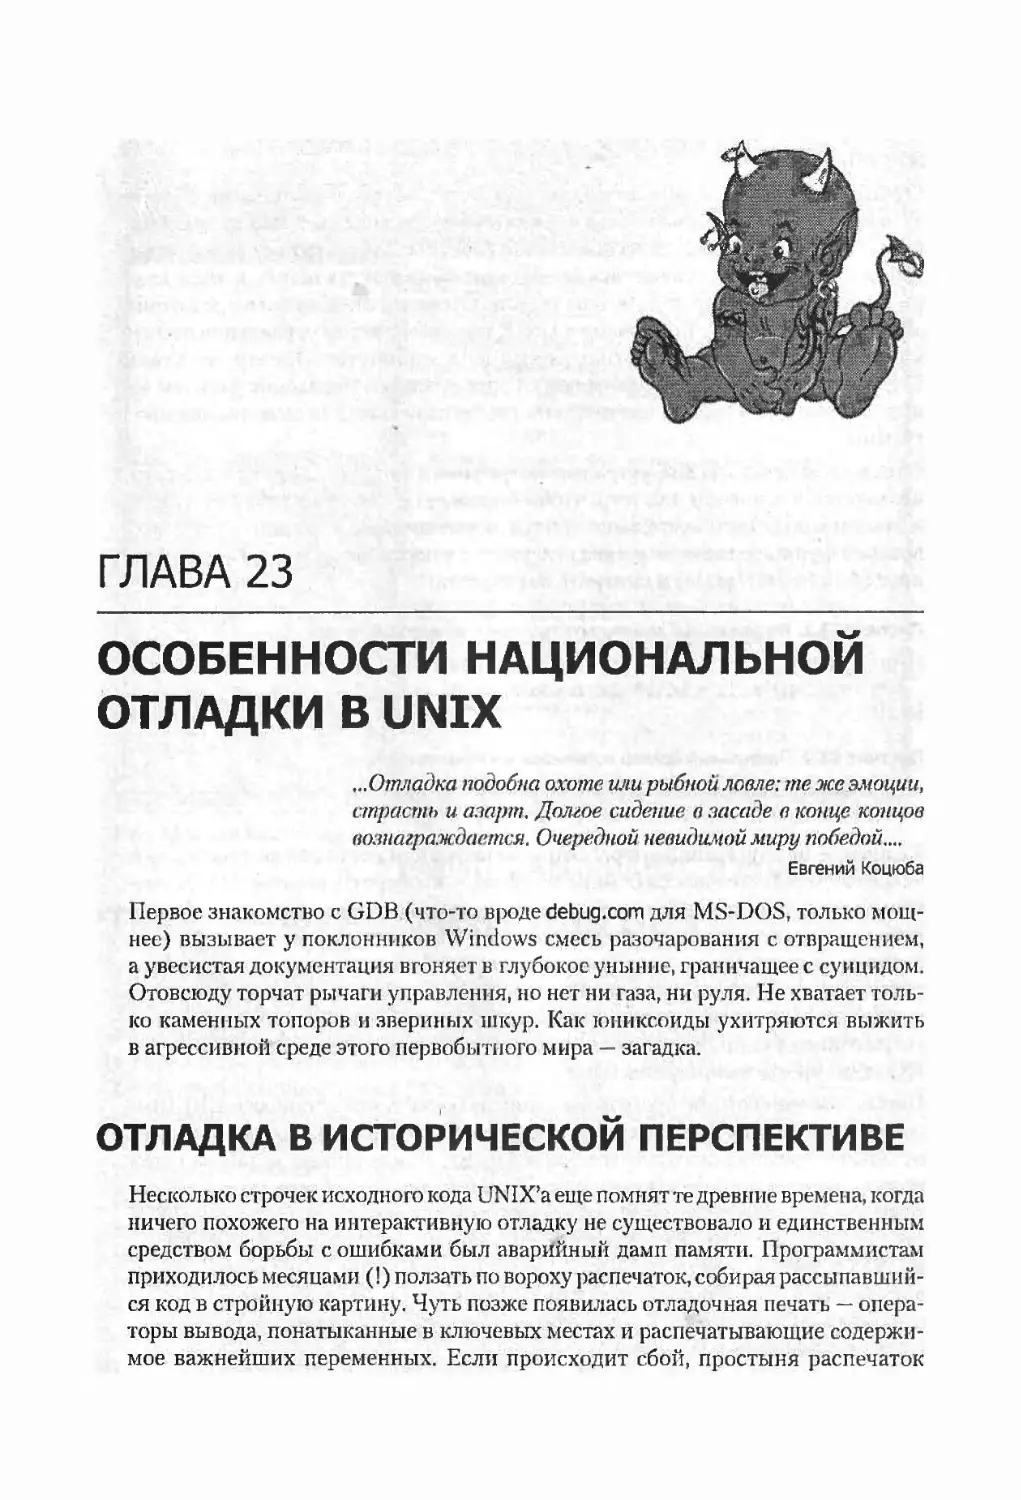 Глава 23. Особенности национальной отладки в UNIX